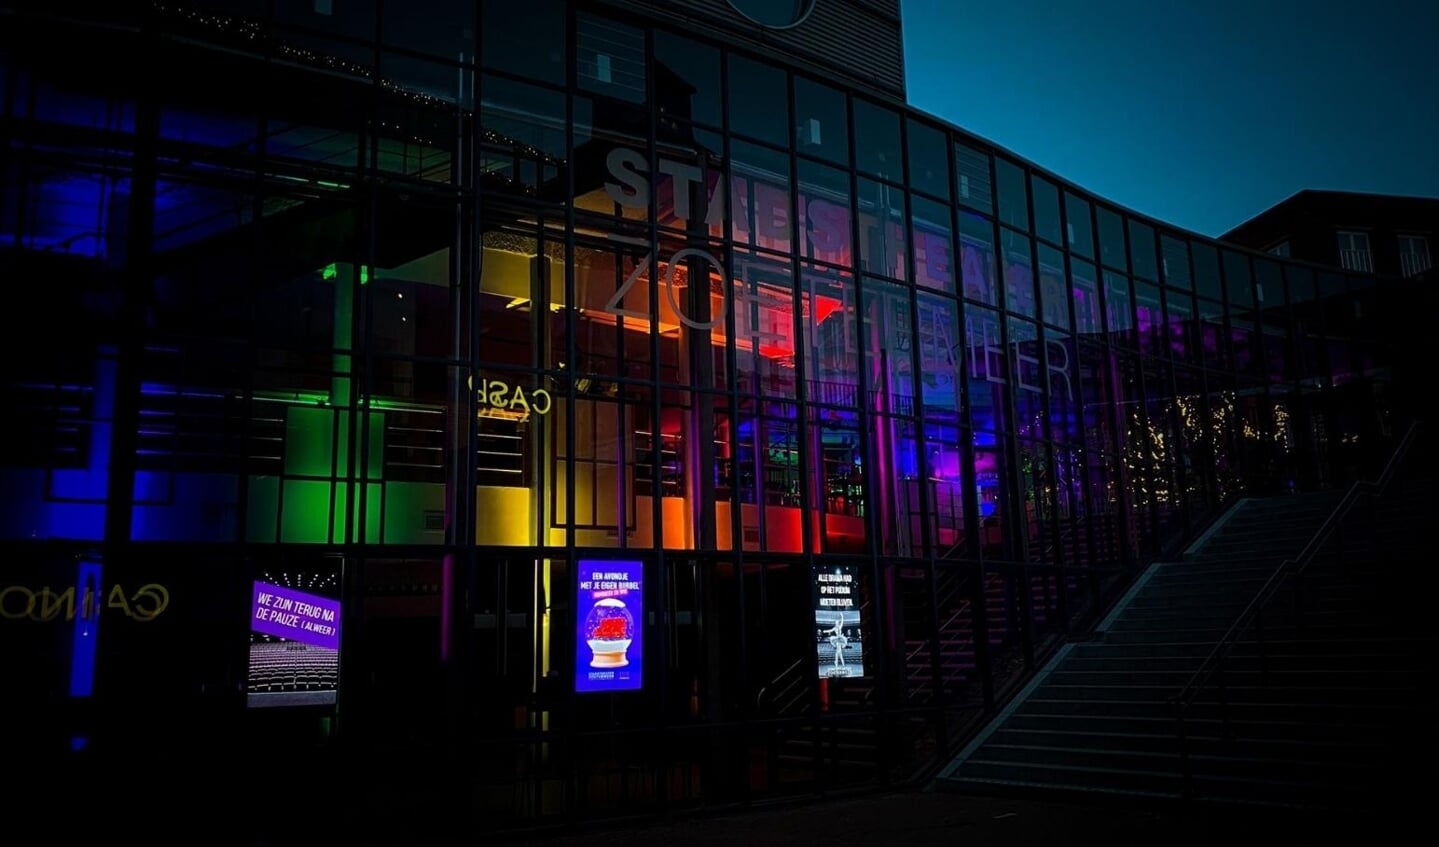 Stadstheater is kleurrijk verlicht om haar bezoekers te laten zien dat ze er nog zijn.